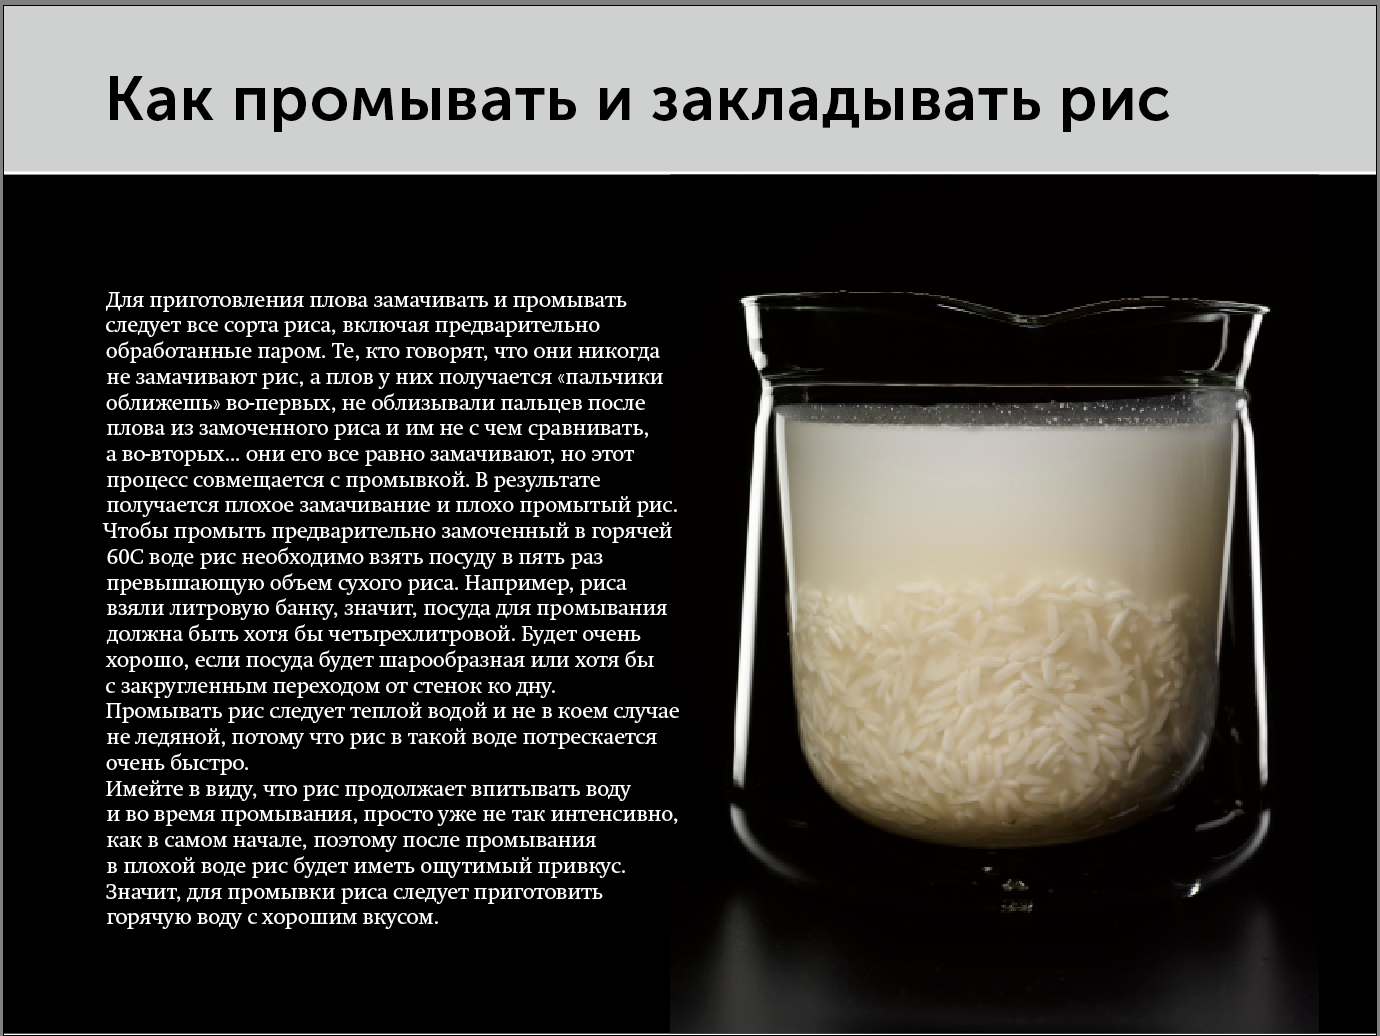 Рис для плова нужно промывать. Соотношение риса и воды для плова. Порции риса и воды для плова. Соотношение воды и риса в плове в стаканах. Рис пропорции воды и риса для плова.